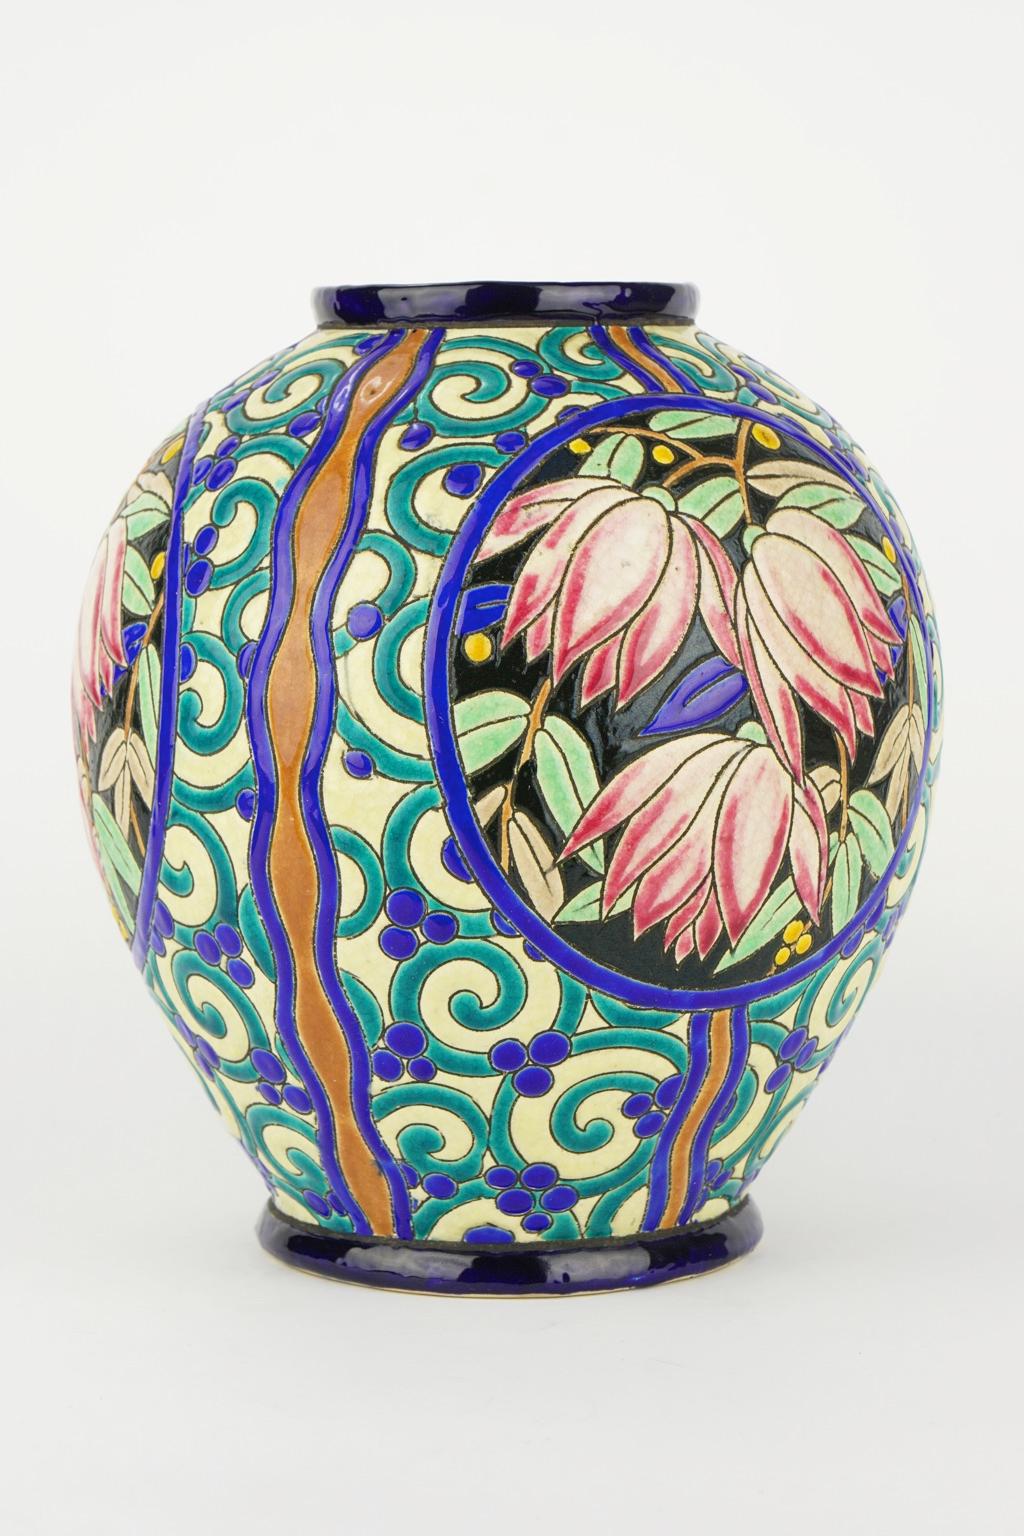 Earthenware Art Deco Keramis Boch Vase For Sale